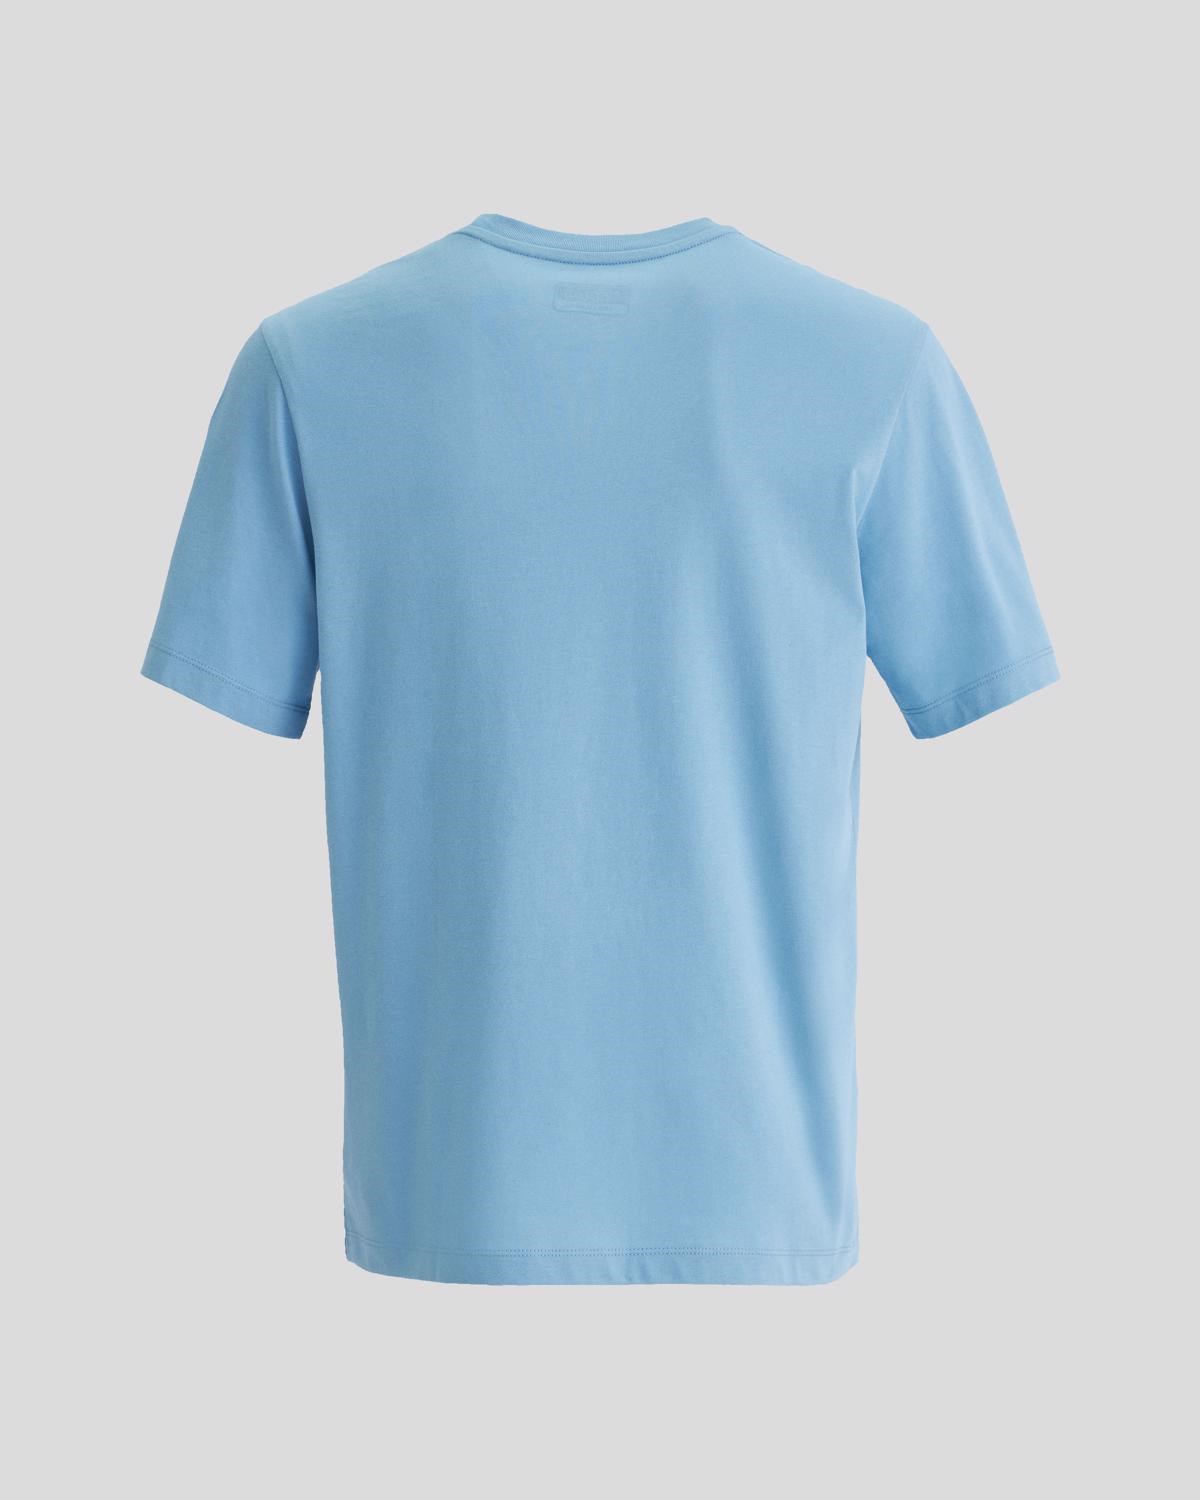 Kappa Erkek T-Shirt 331F7BW Blue Dusk